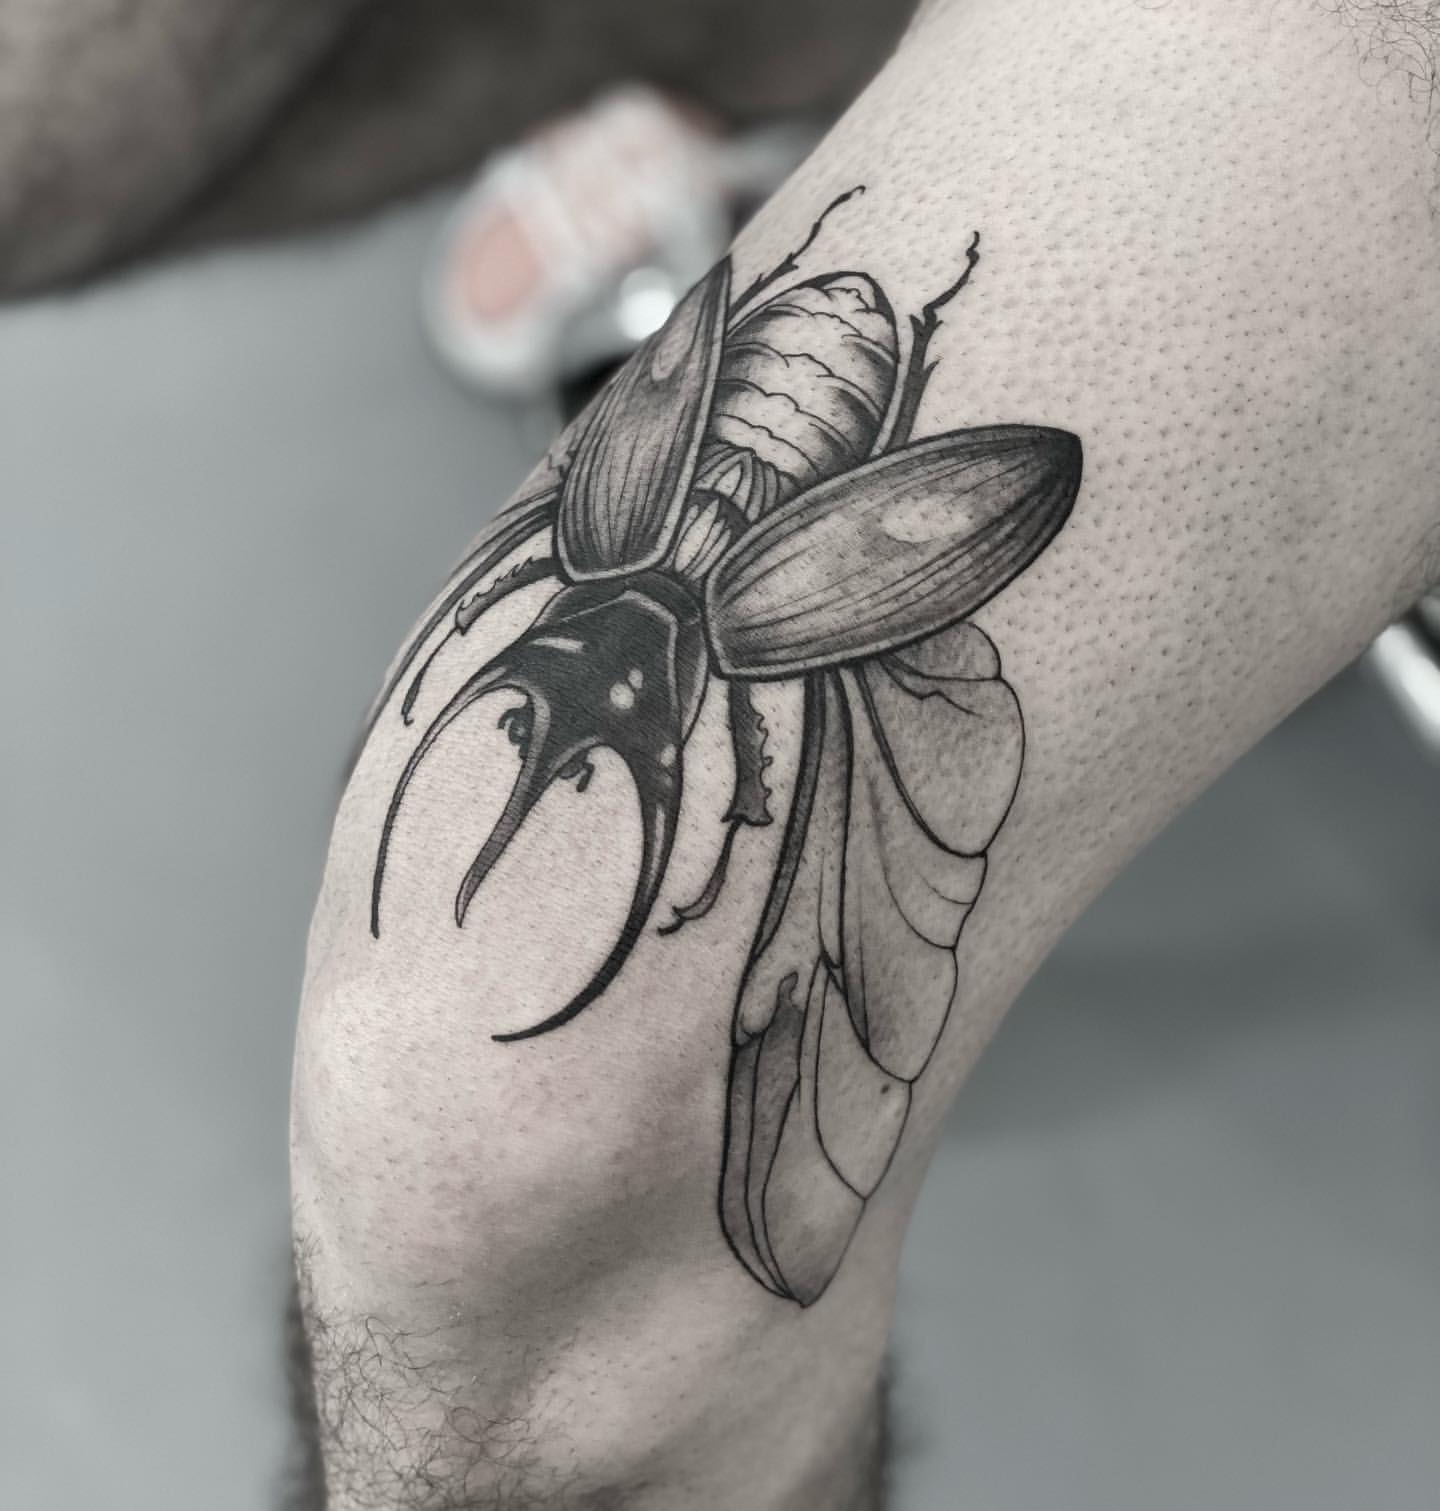 Scarab/Beetle Tattoo Ideas 20